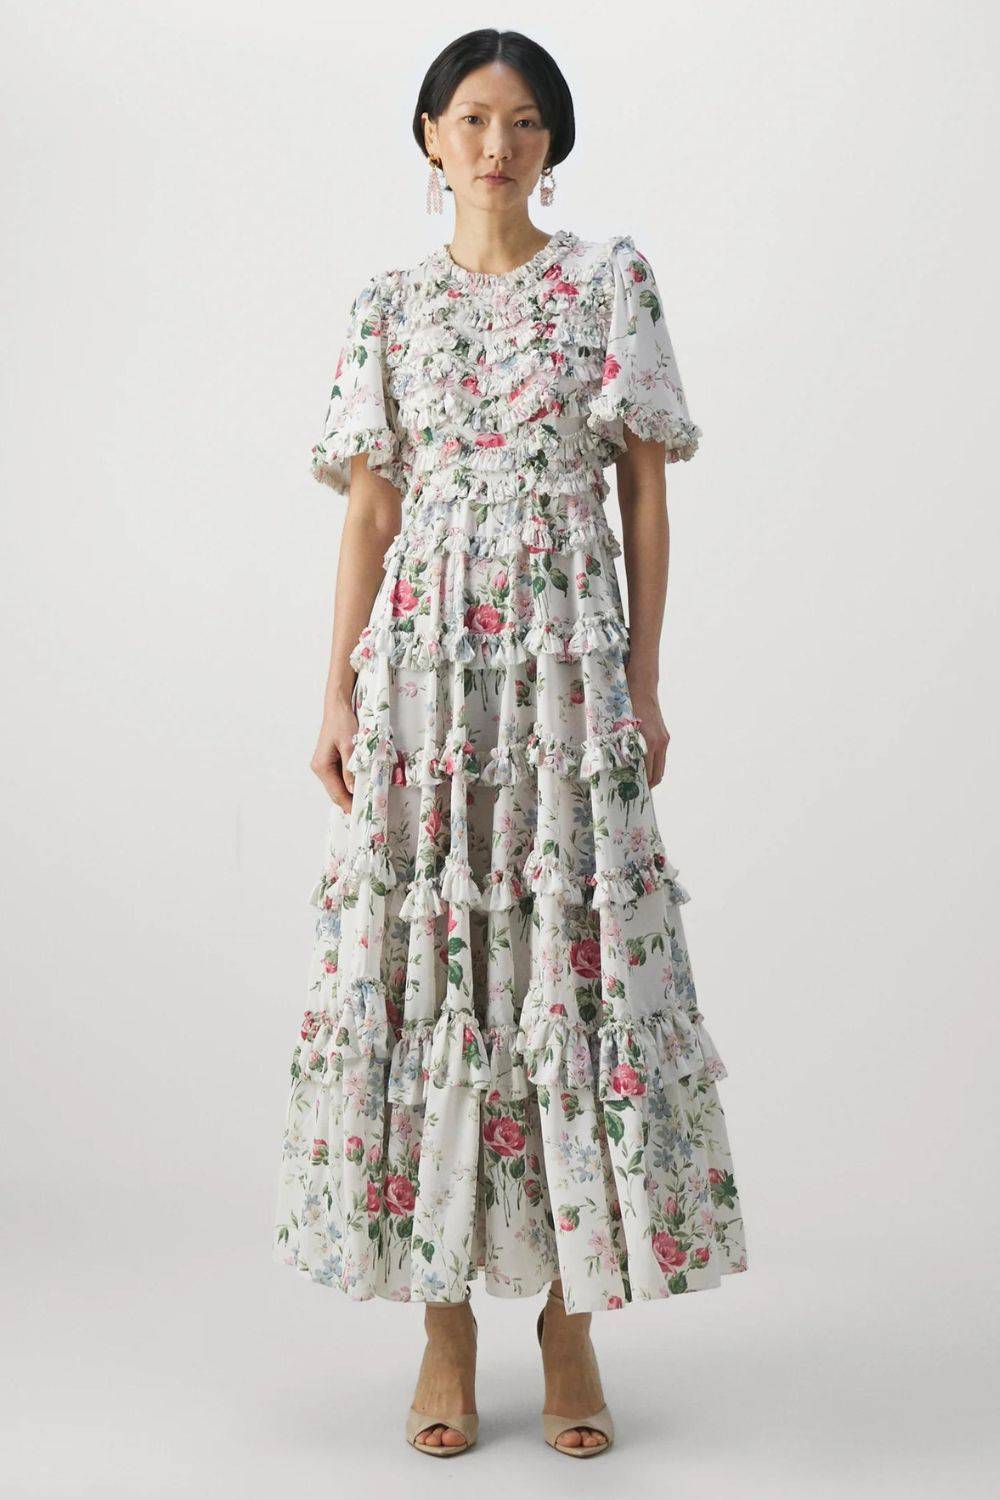 Sukienka w kwiaty w stylu Gillian Anderson, Needle & Thread, 2109 zł (Fot. materiały prasowe)